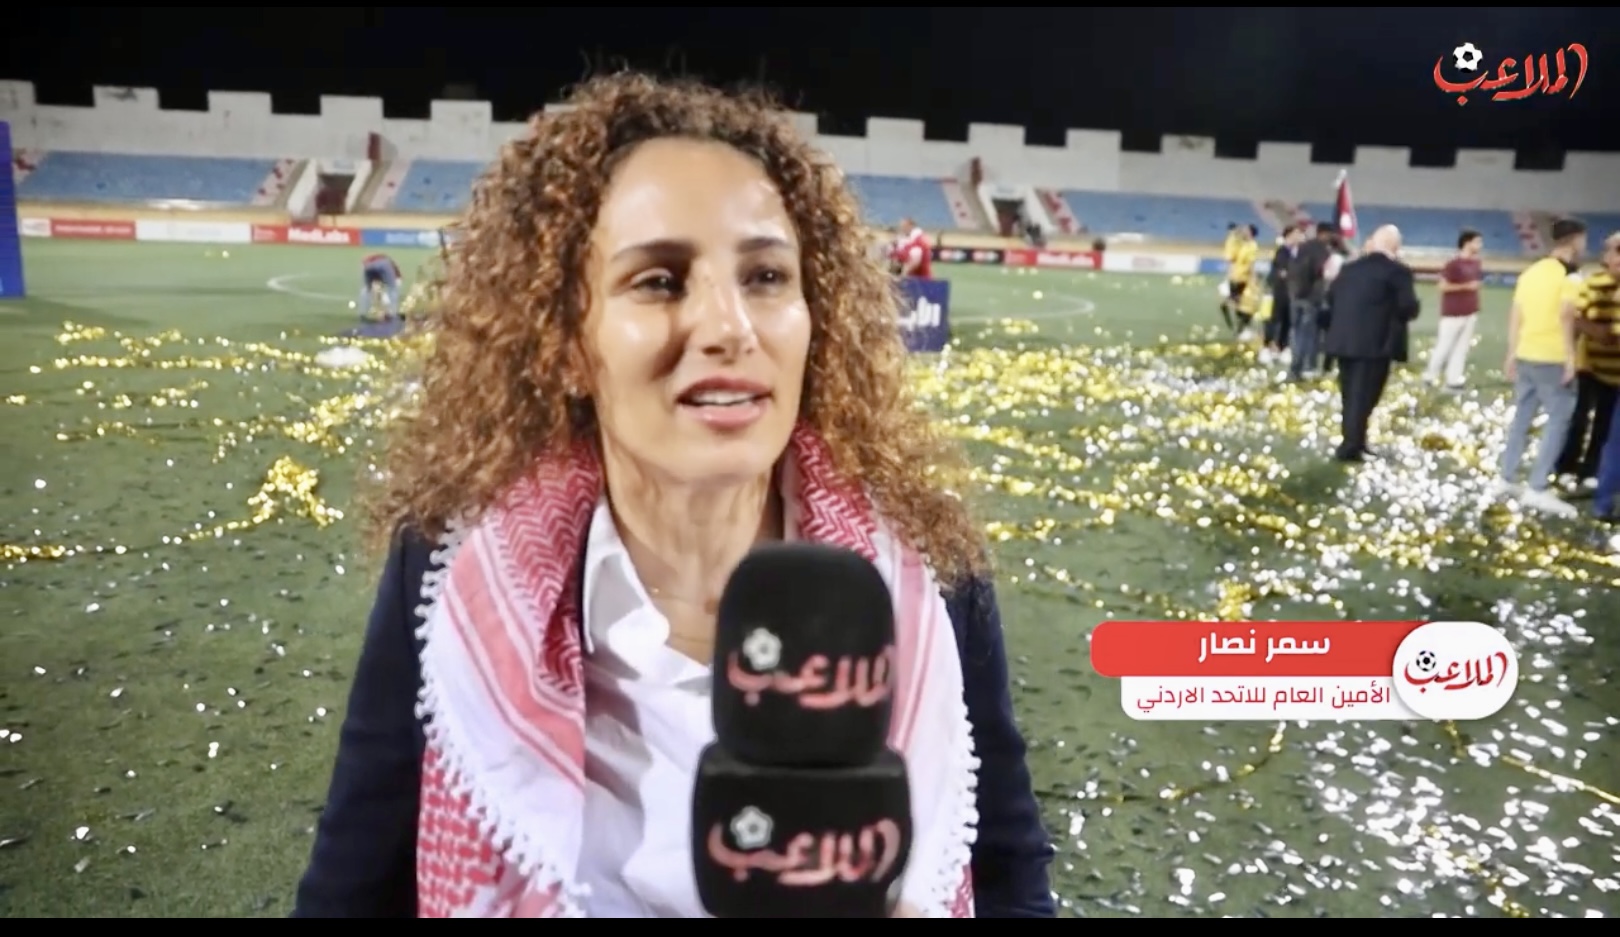 ماذا قالت سمر نصار للملاعب بعد تتويج الحسين-فيديو | رياضة محلية